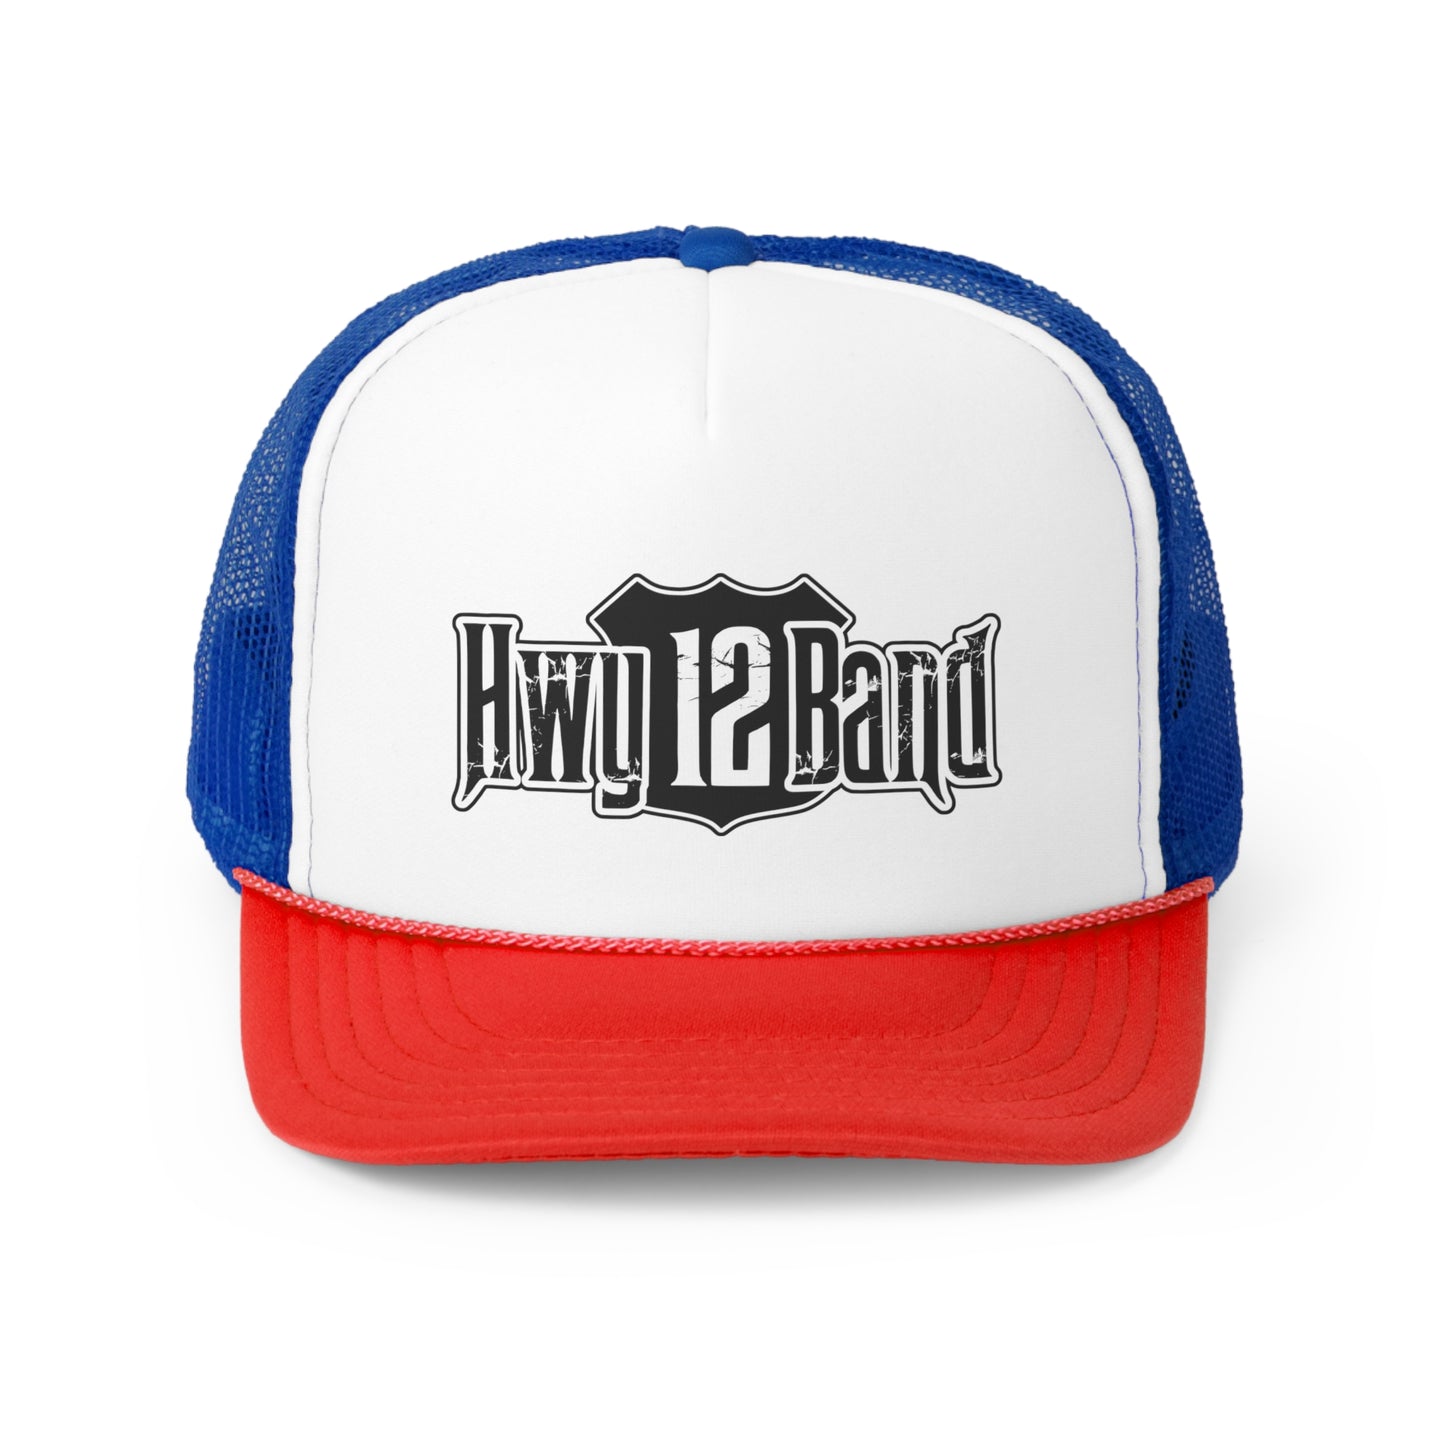 Hwy 12 Band Trucker Caps